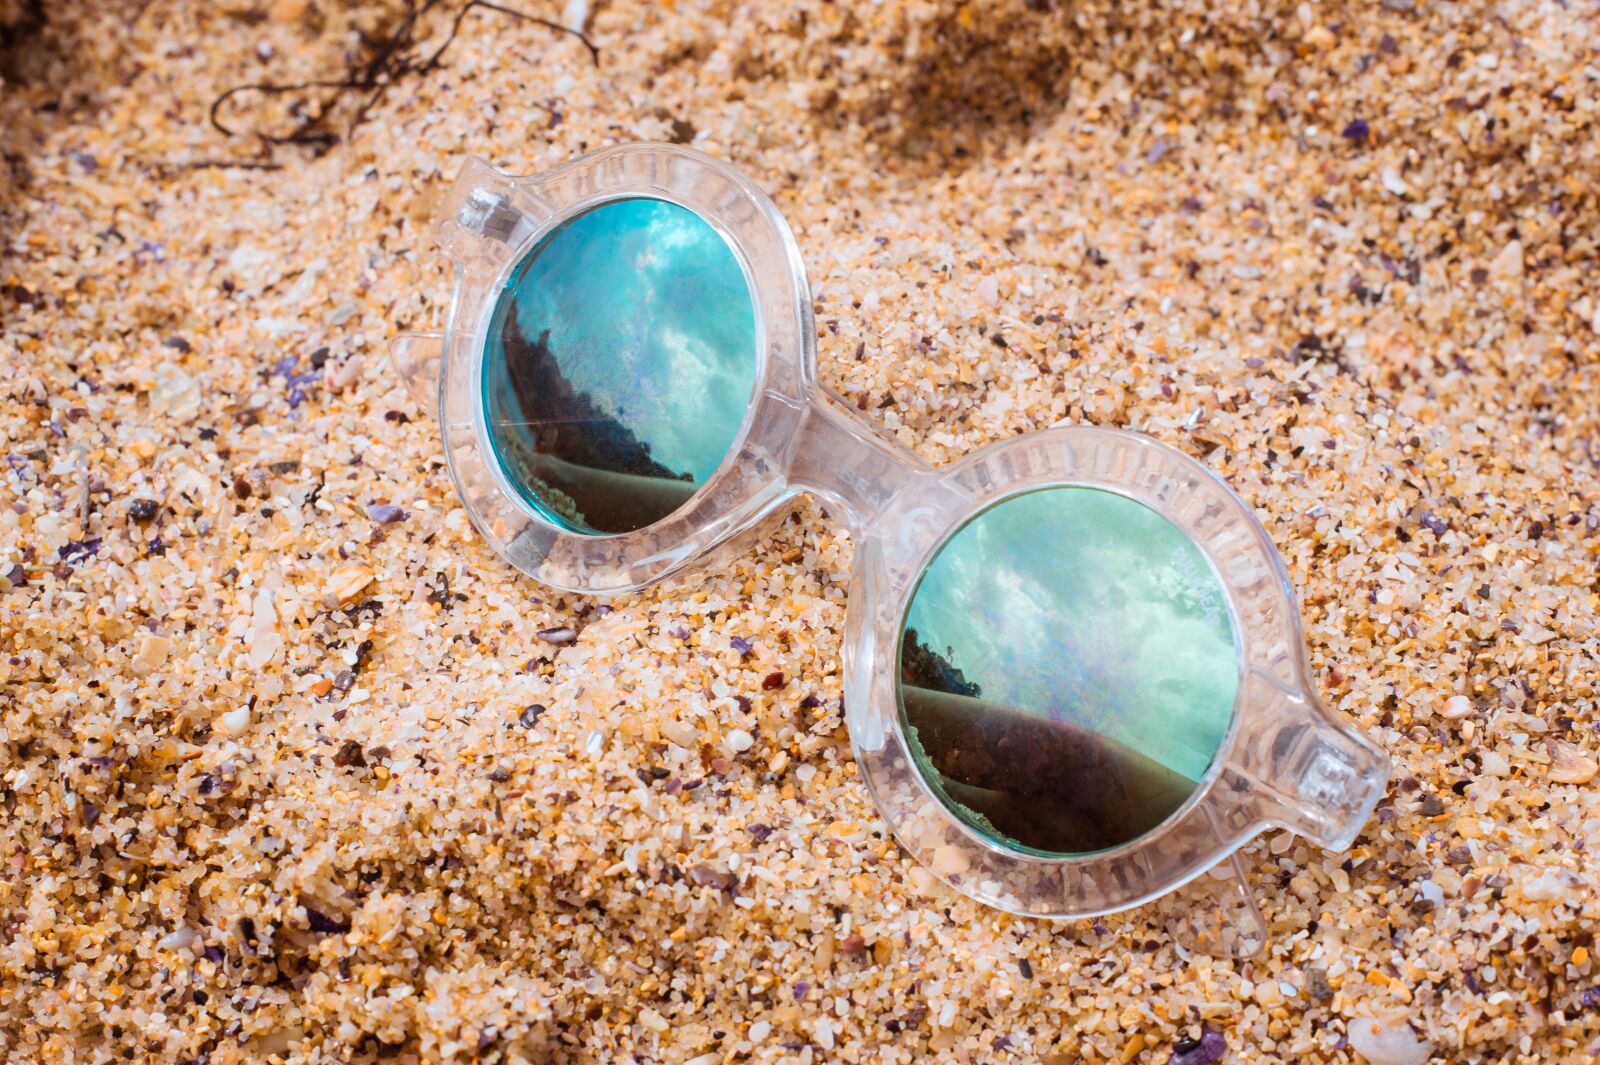 Sony Alpha NEX-5 sample photo. Sand, sunglasses, beach photography